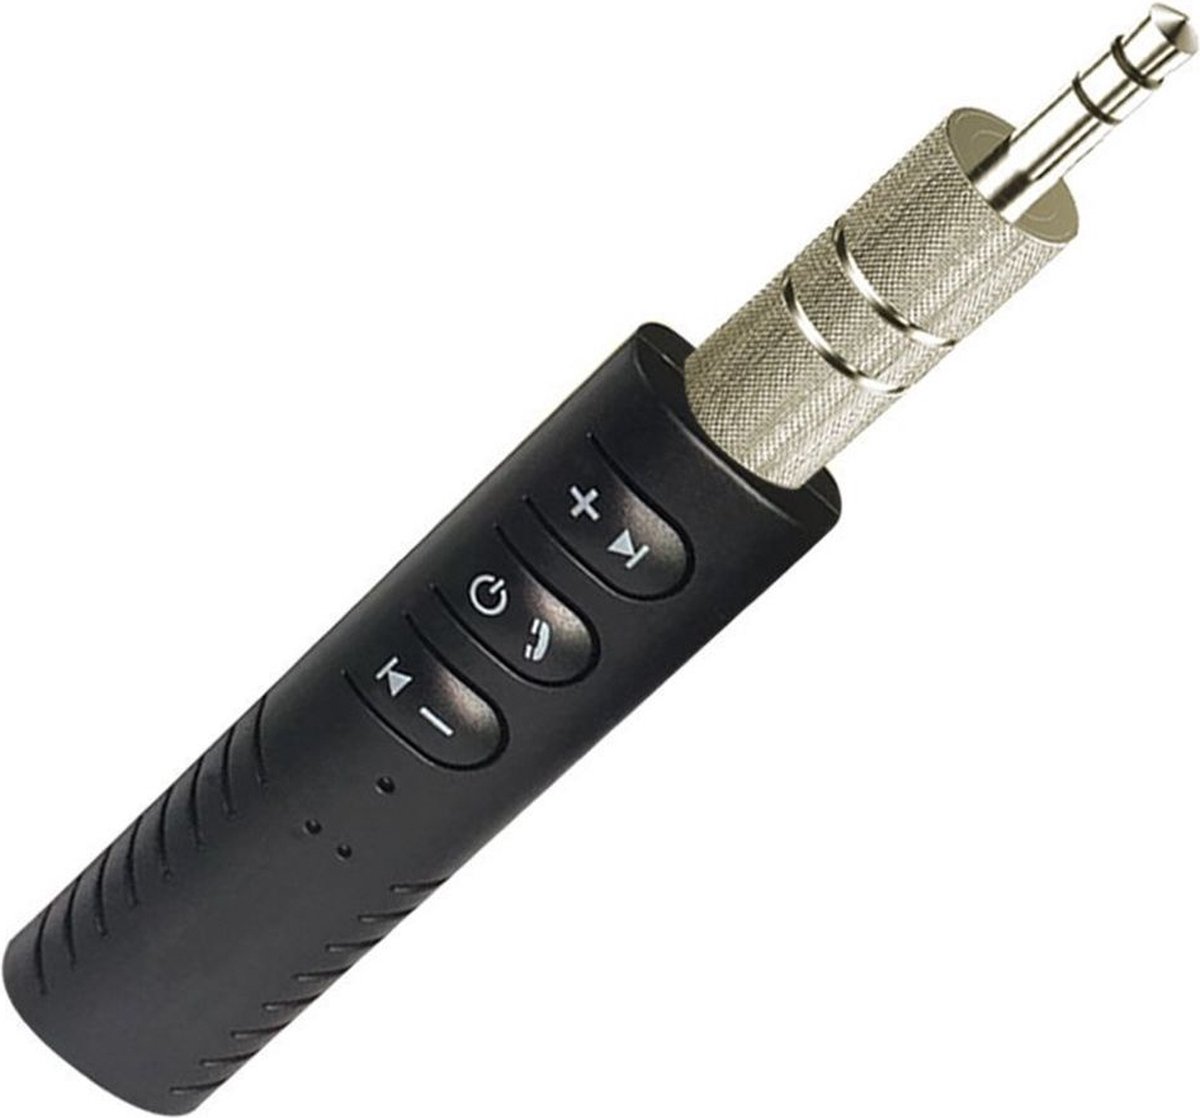 Bluetooth Audio Receiver 3.5mm Jack voor Aux Apparaten Zwart